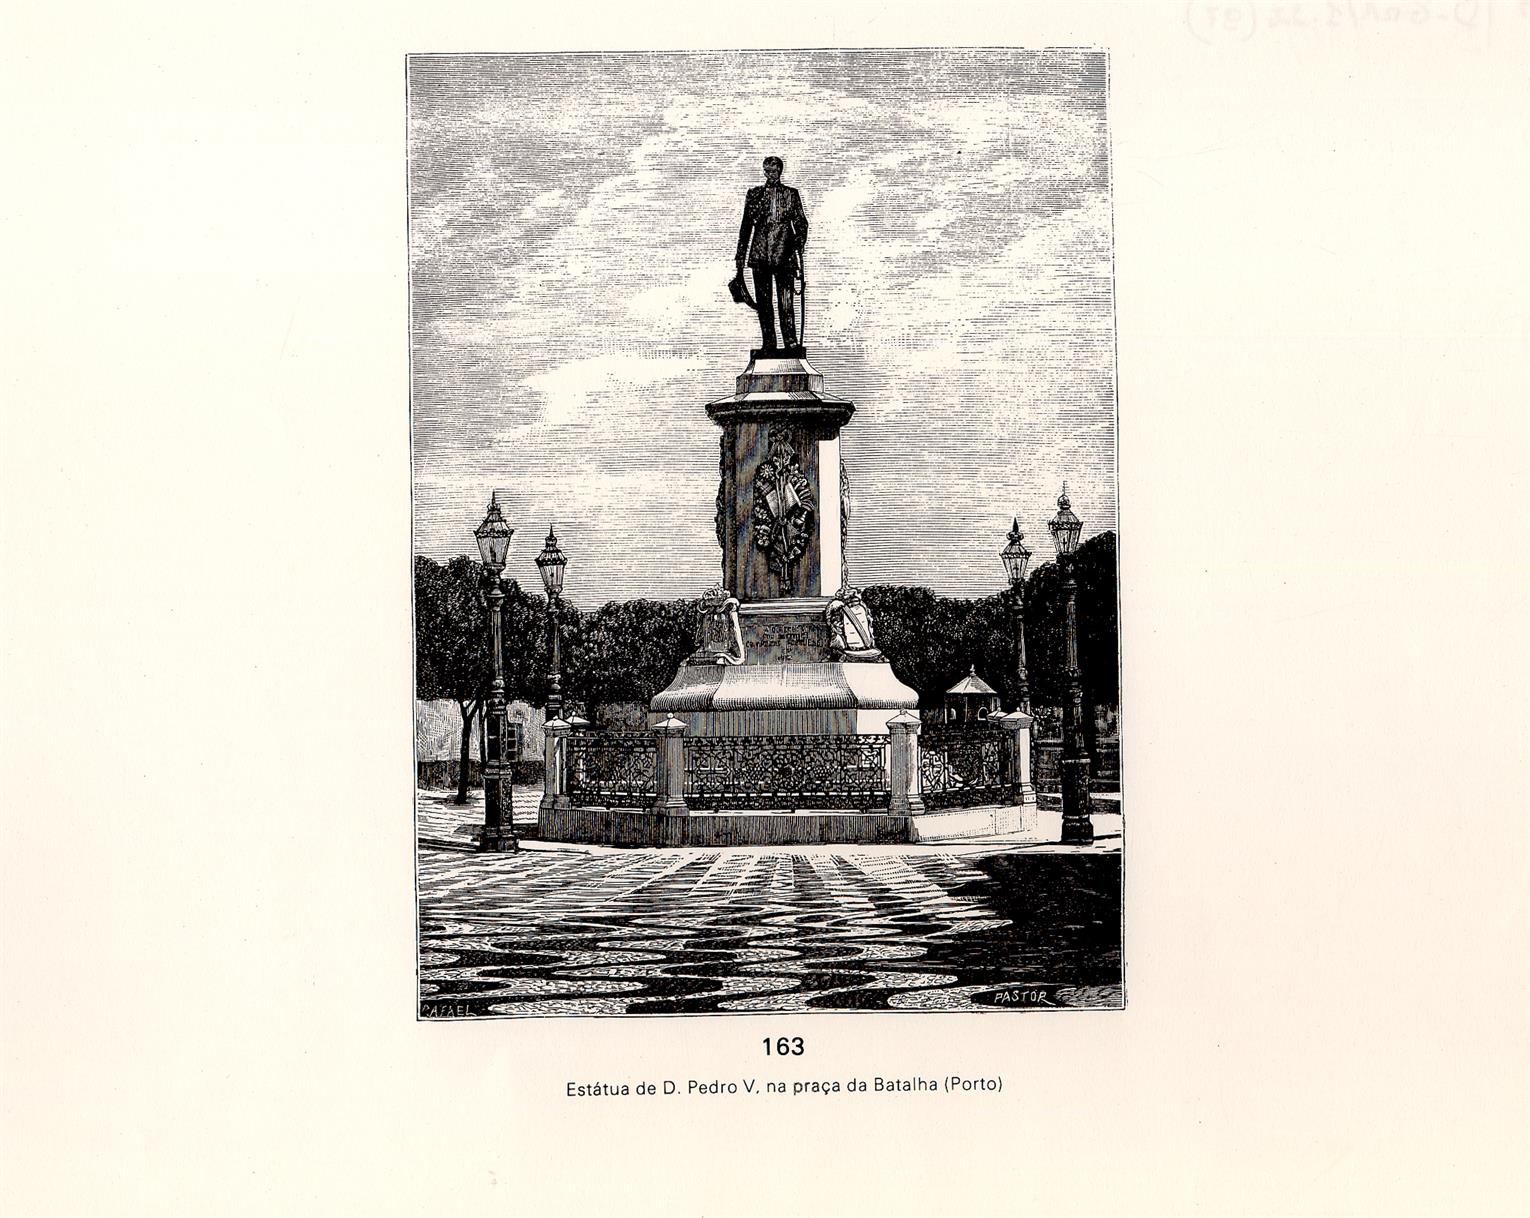 Estátua de Dom Pedro V, na Praça da Batalha, Porto